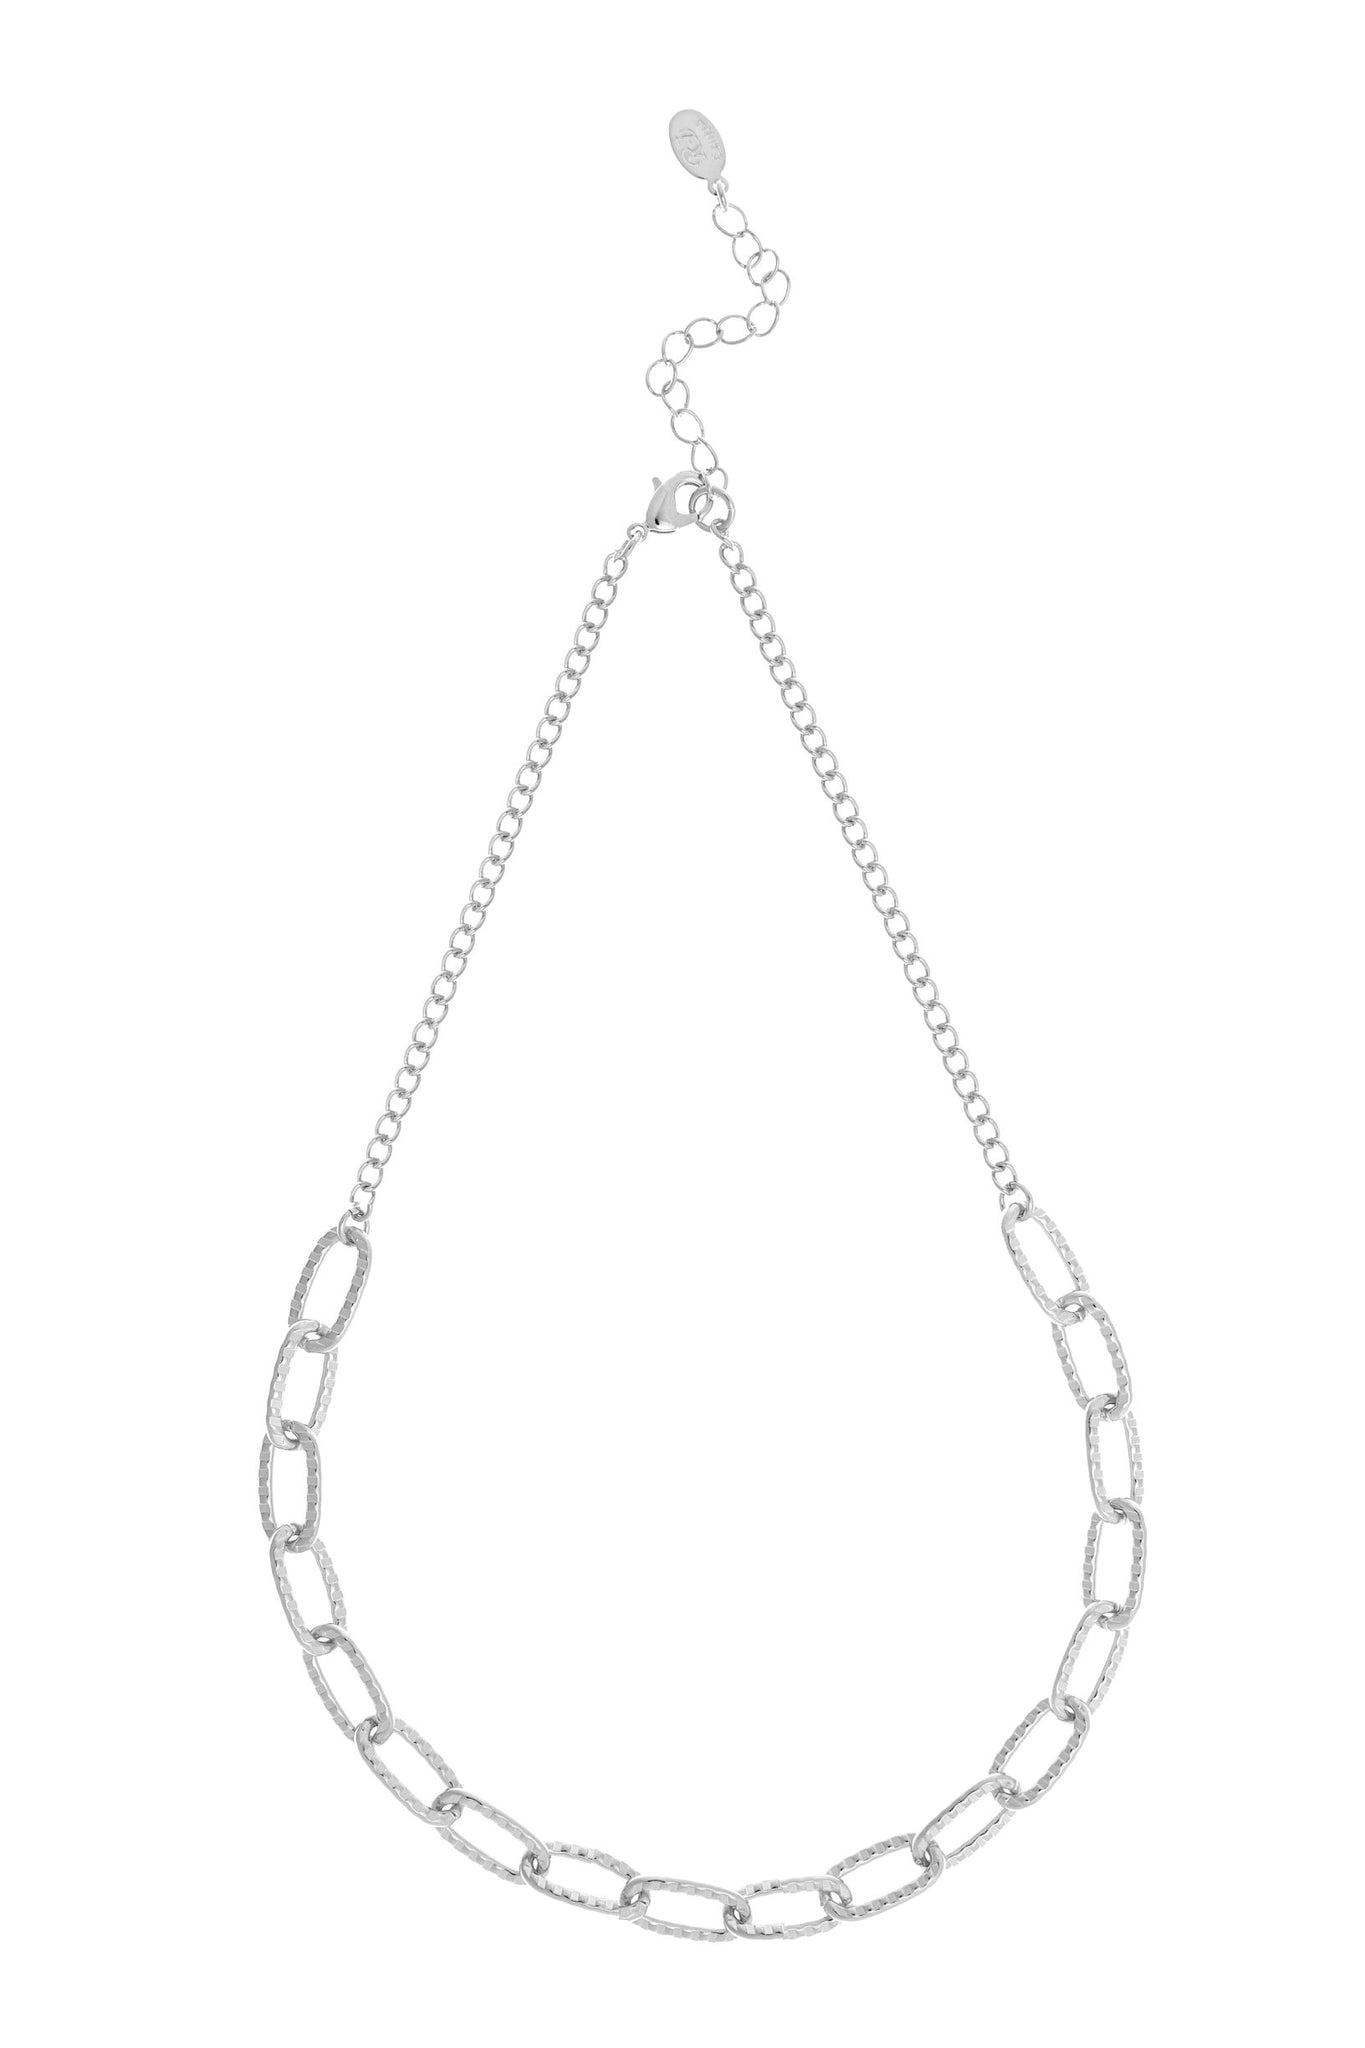 Rhodium Chain Link Necklace